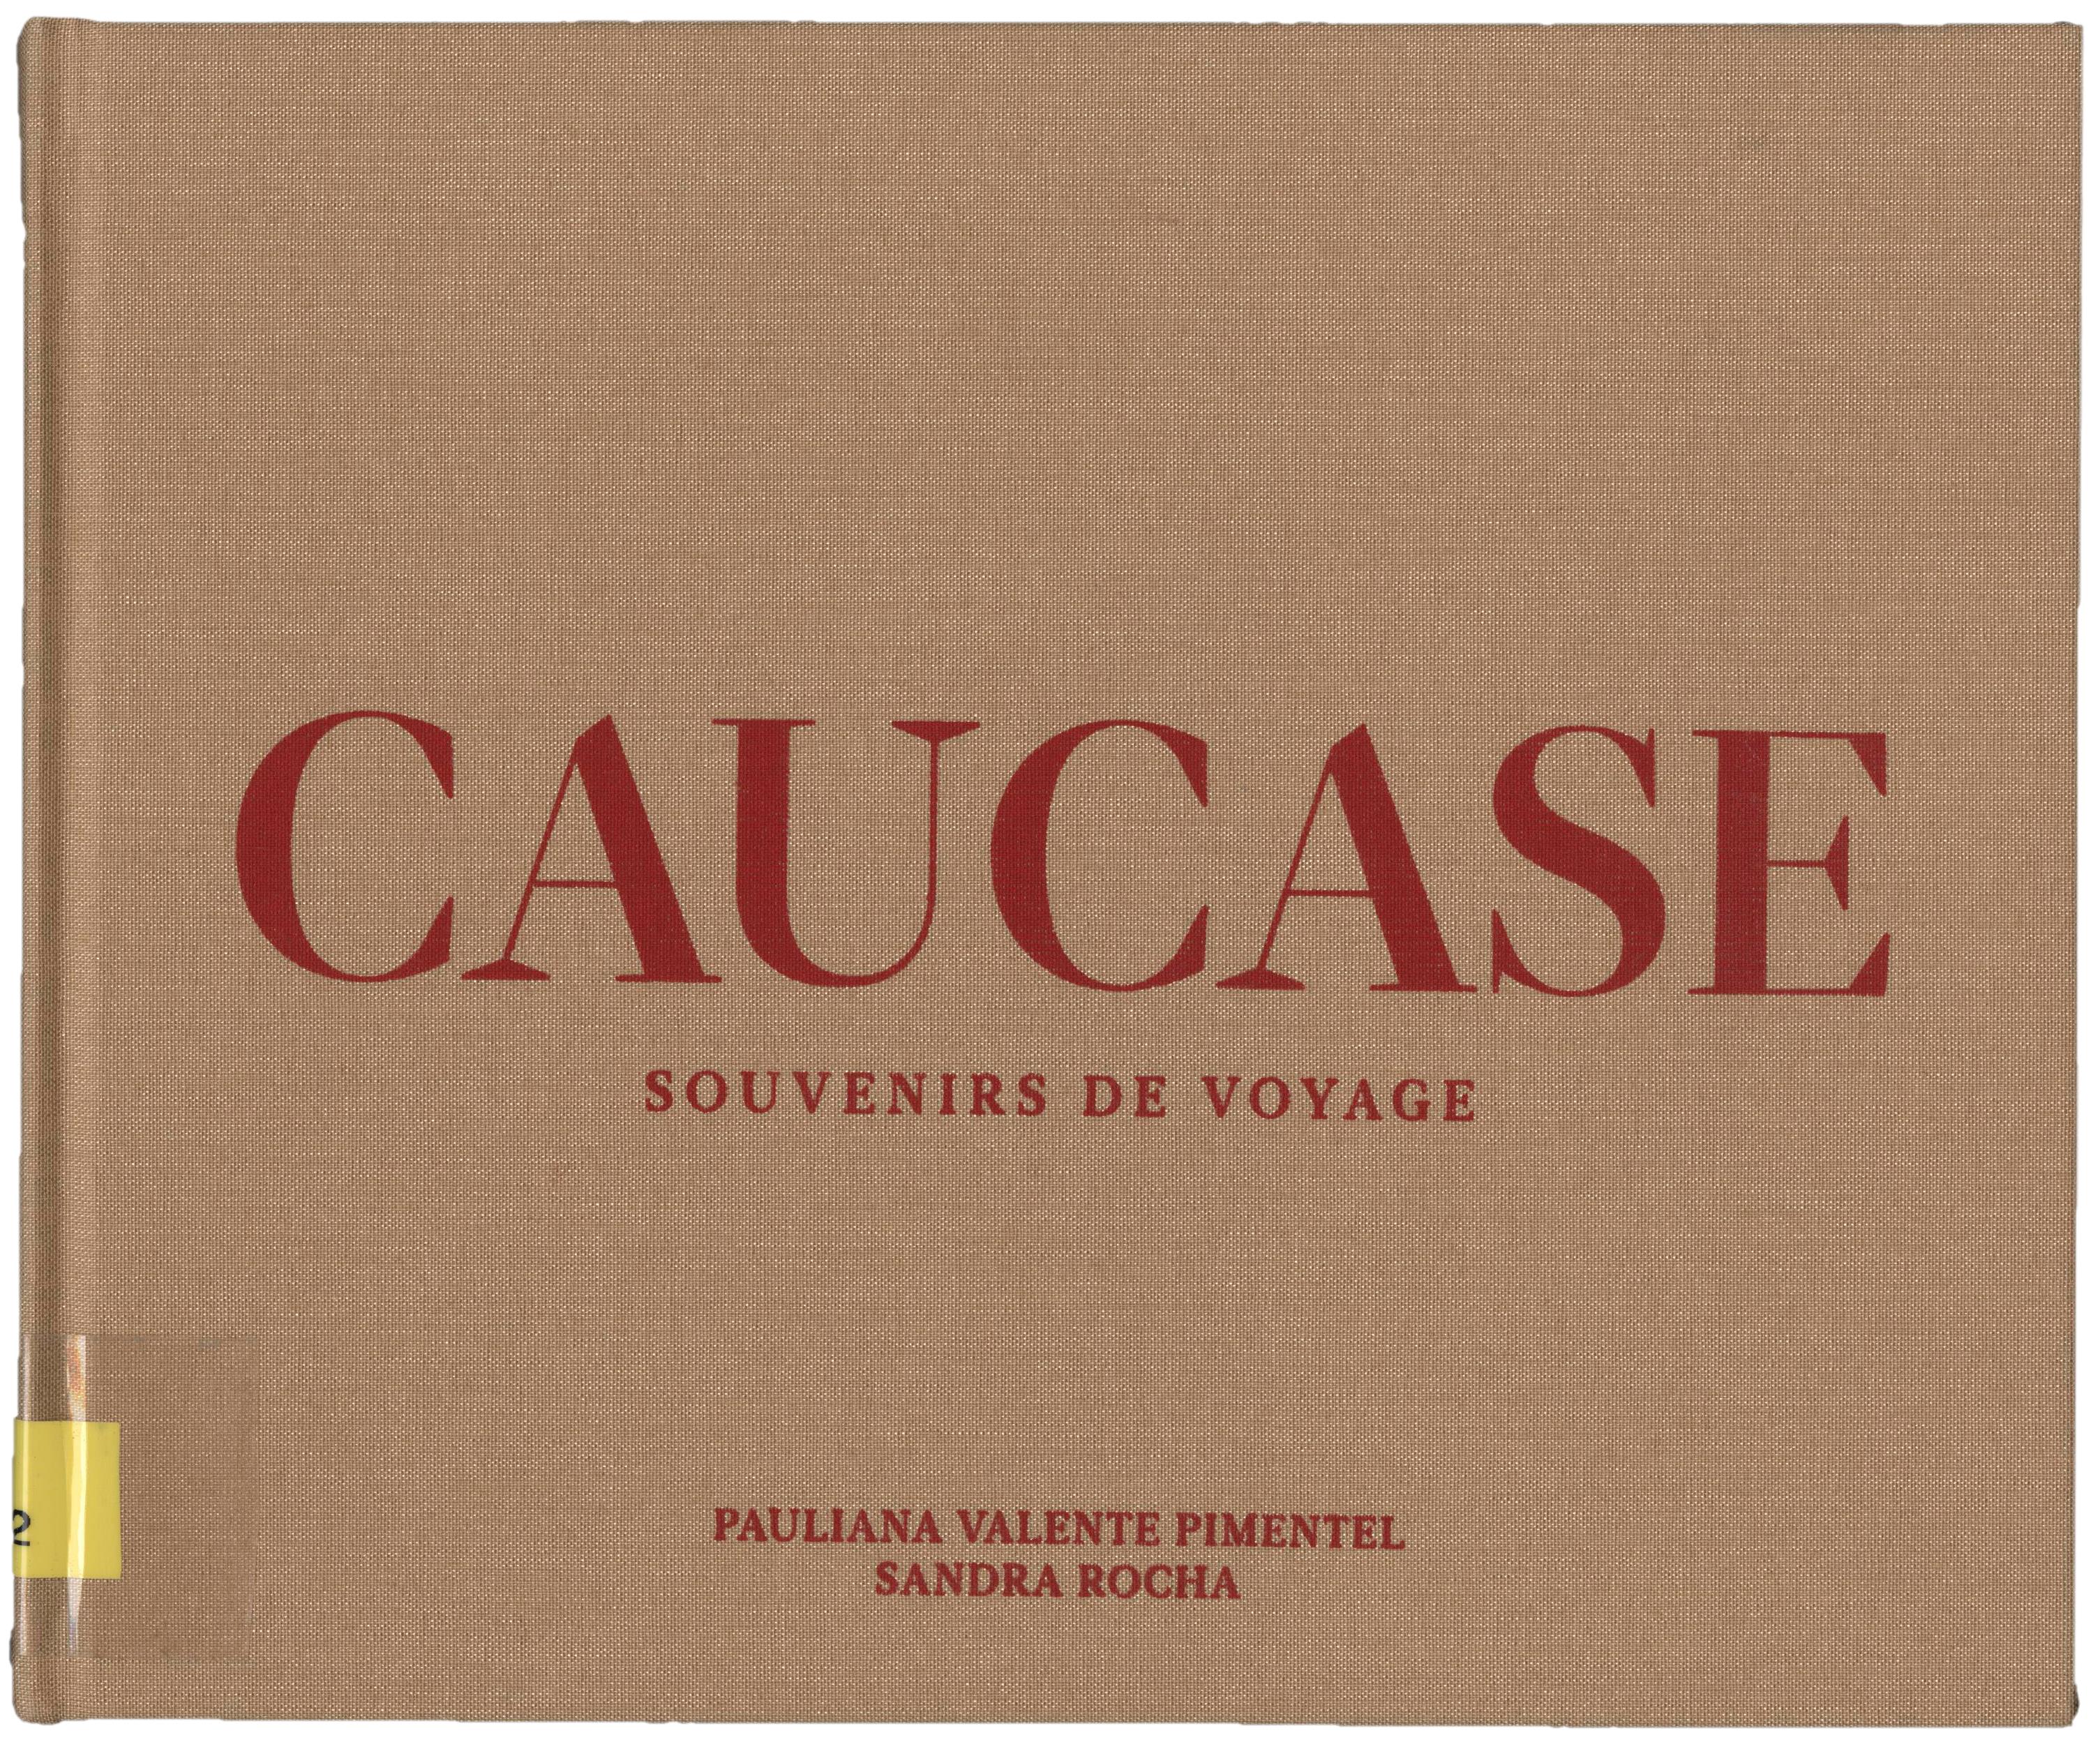 Caucase. Souvenirs de Voyage / Caucase. Souvenirs de Voyage